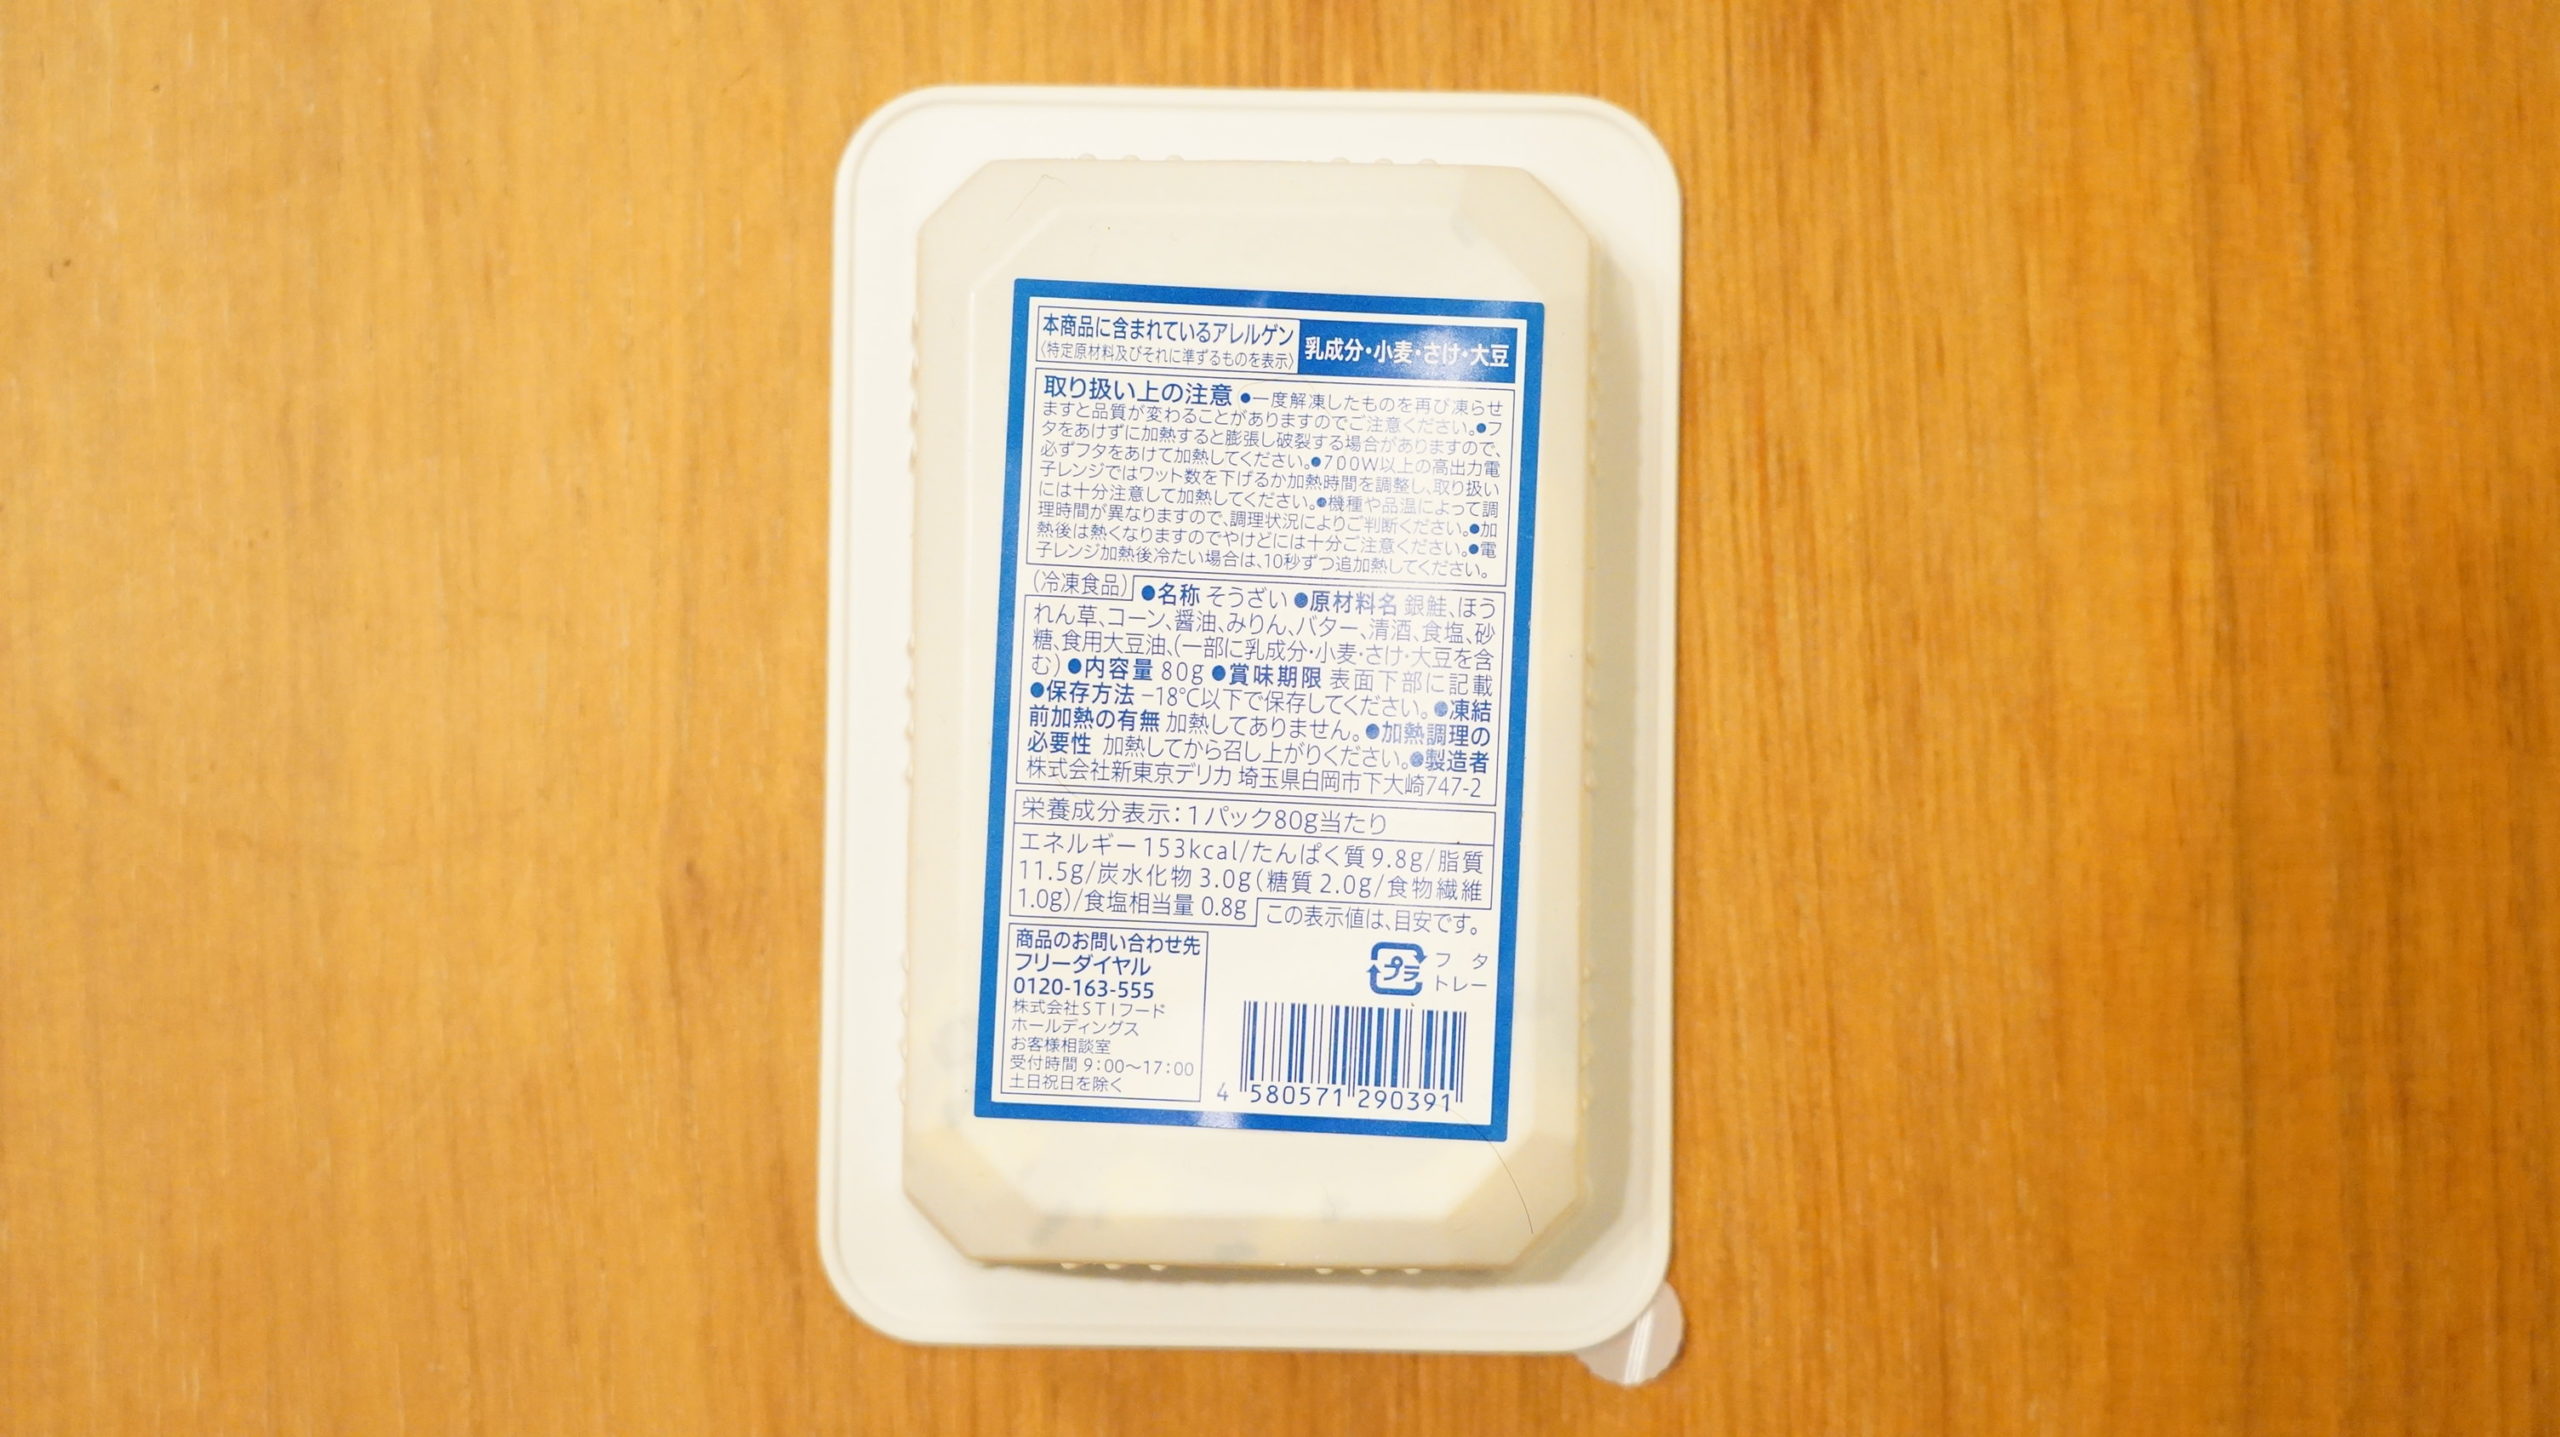 セブンイレブンの冷凍食品「バター香る銀鮭の醤油焼」のパッケージ裏面の写真